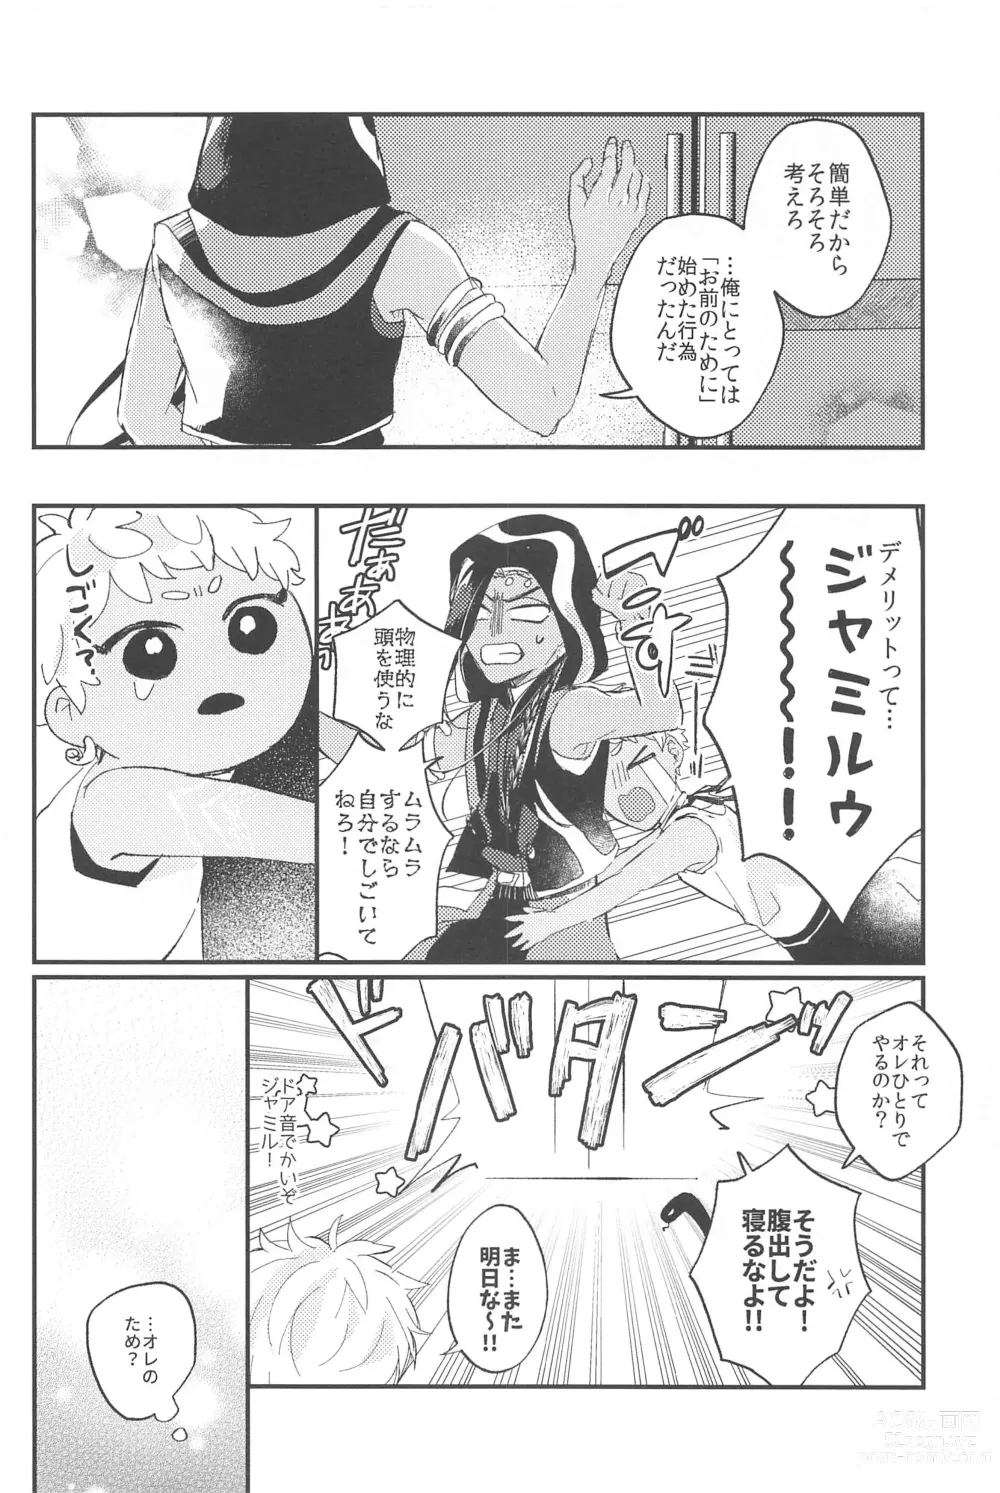 Page 7 of doujinshi Kantan dakara Muzukashii